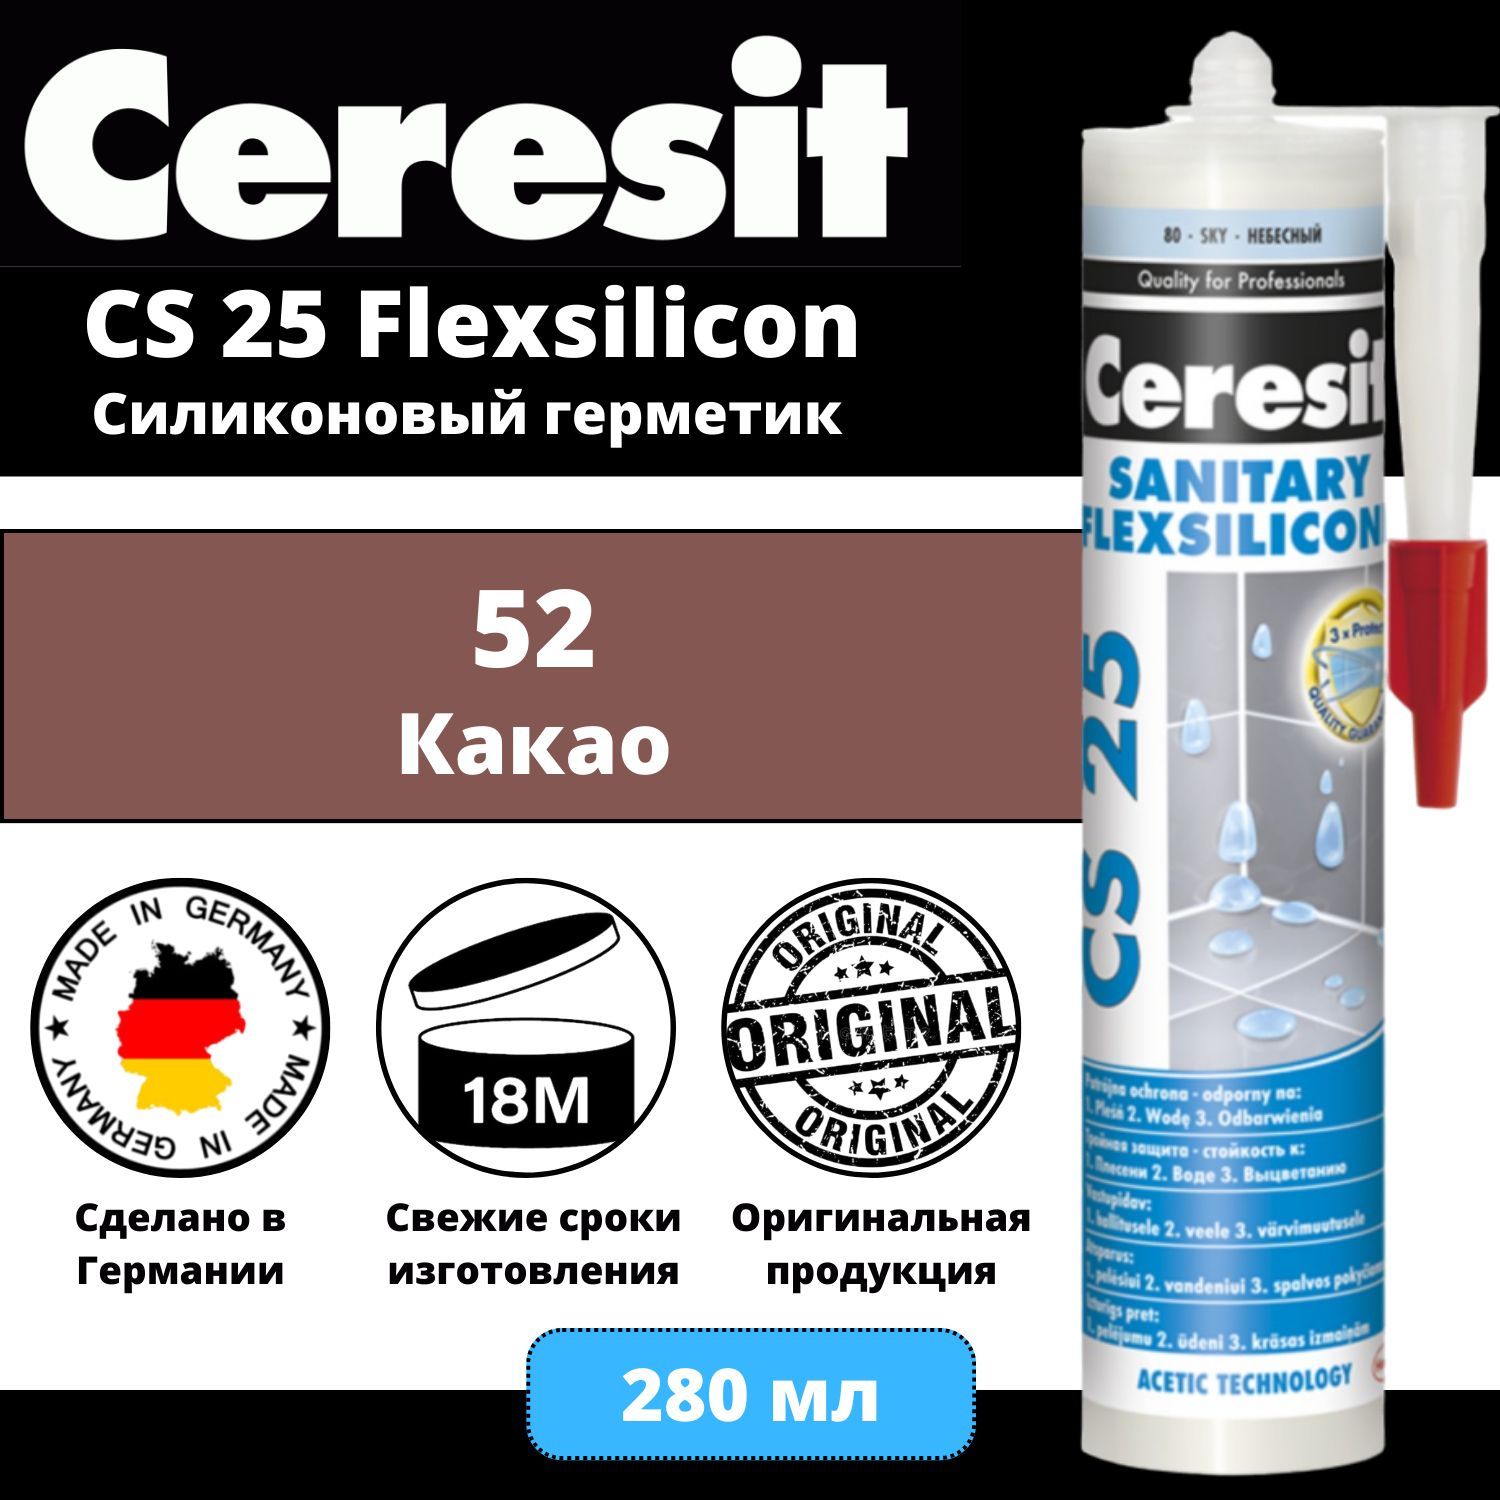 Санитарный герметик Ceresit CS 25 санитарный герметик Ceresit CS 25. Ceresit cs25 55. Цвета герметика Ceresit cs25.